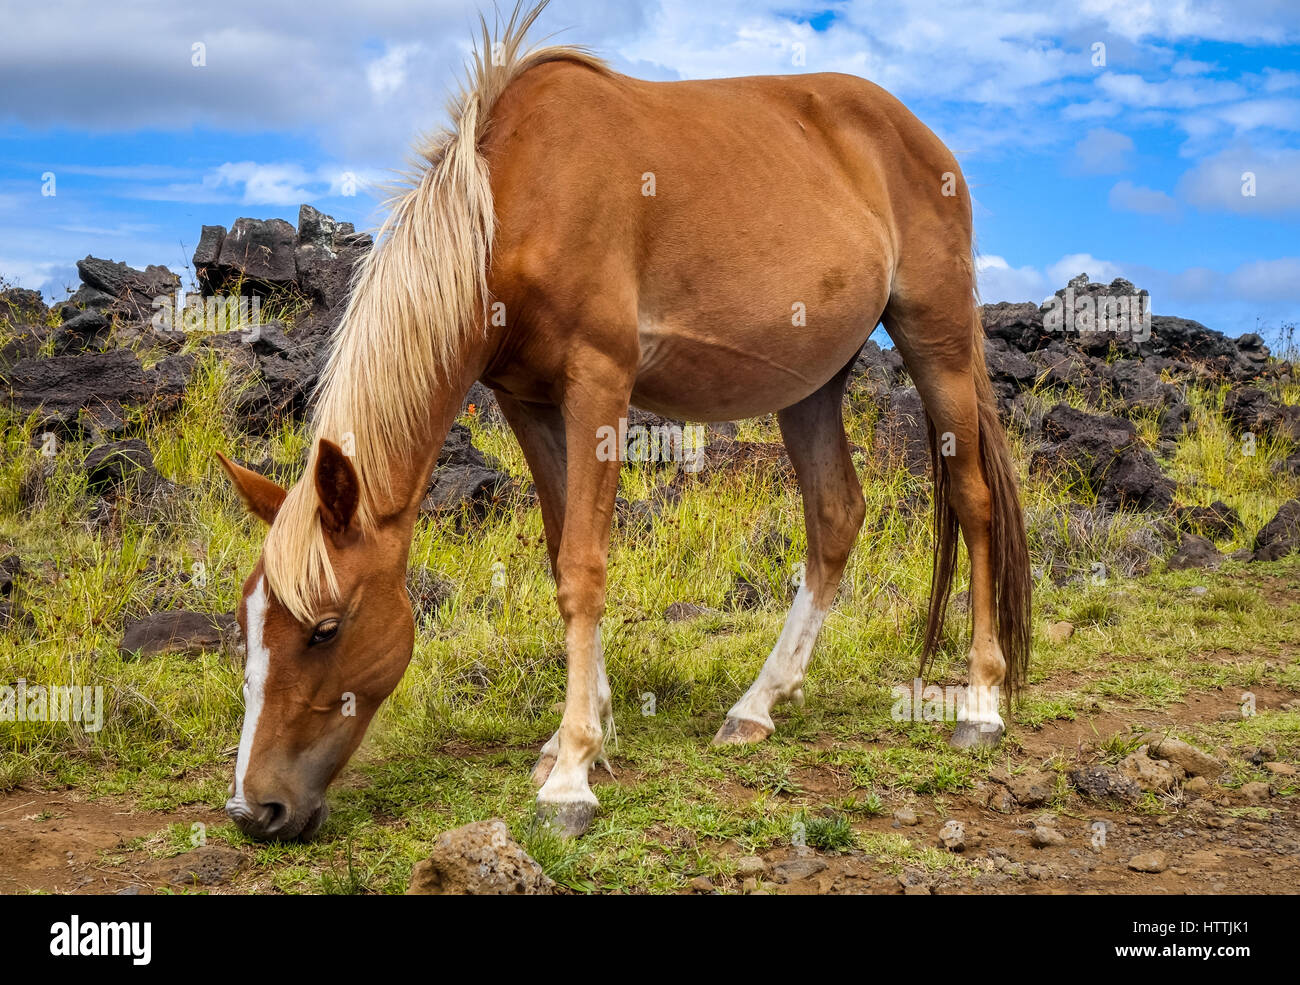 Cavallo in isola di pasqua campo, oceano pacifico, Cile Foto Stock